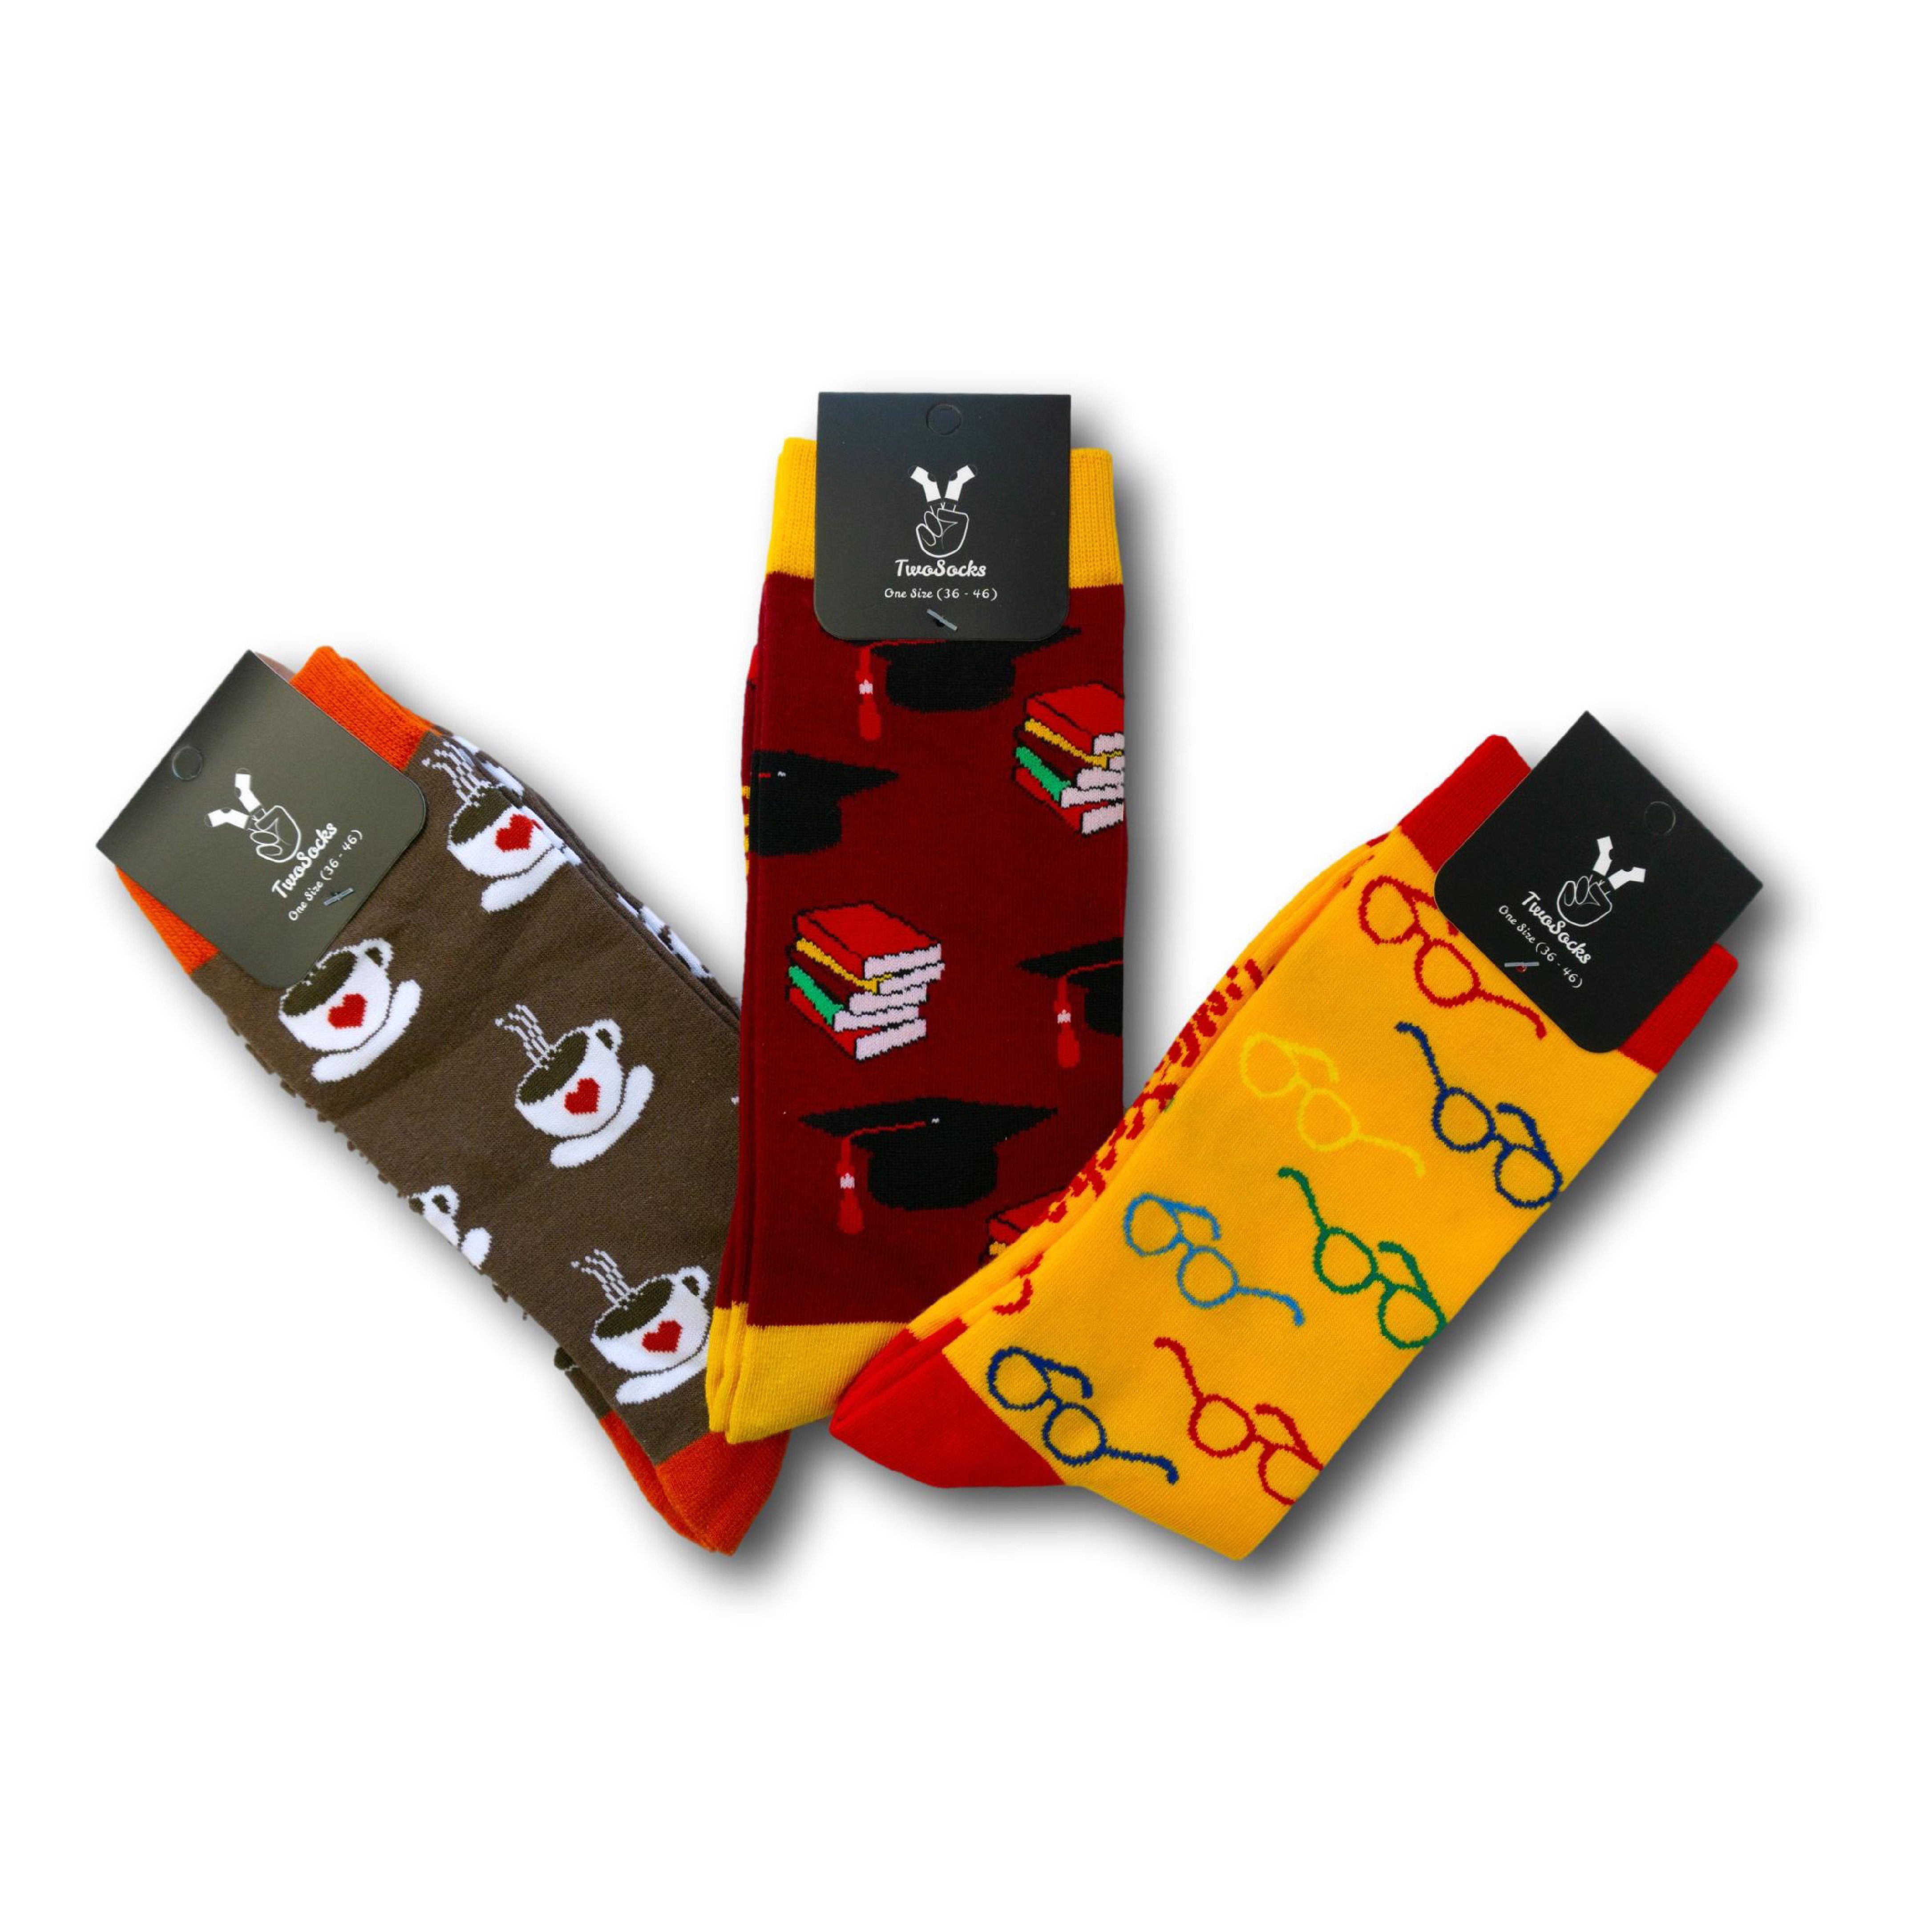 TwoSocks Freizeitsocken Lustige Socken mit Studenten, Brille, Kaffee Motiv, Einheitsgröße (Set, 3 Paar) 3er Pack